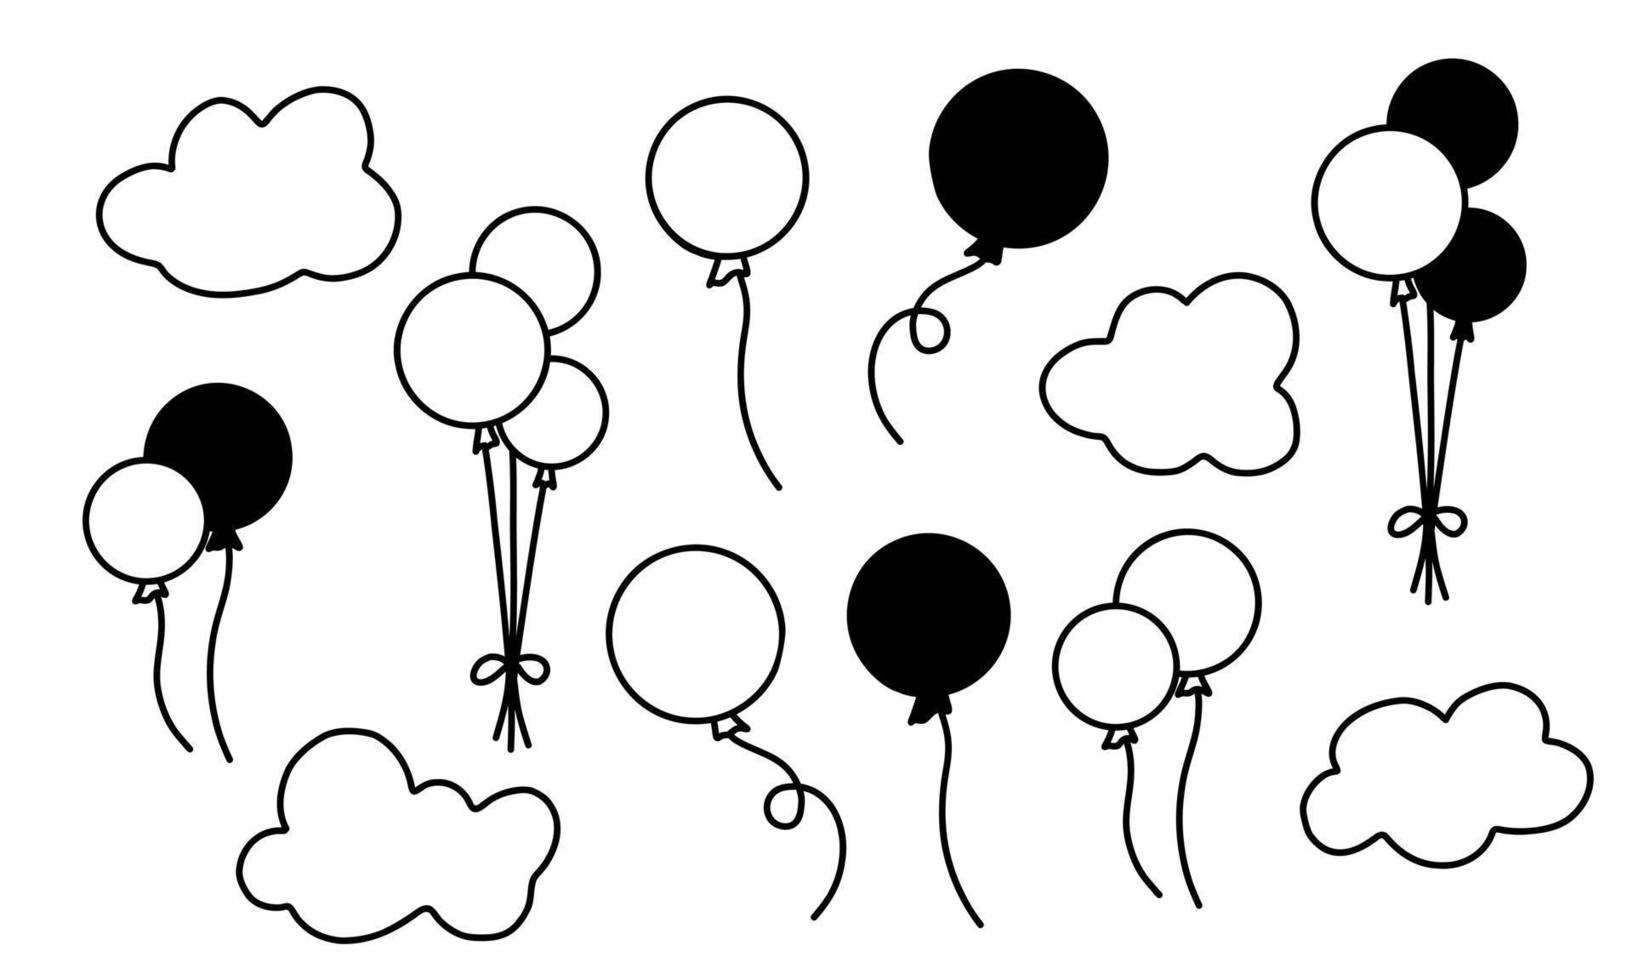 vecteur sertie de ballons à air chaud et de nuages. illustration dessinée à la main pour les cartes d'anniversaire ou de voeux. collection avec des silhouettes noires sur fond isolé blanc